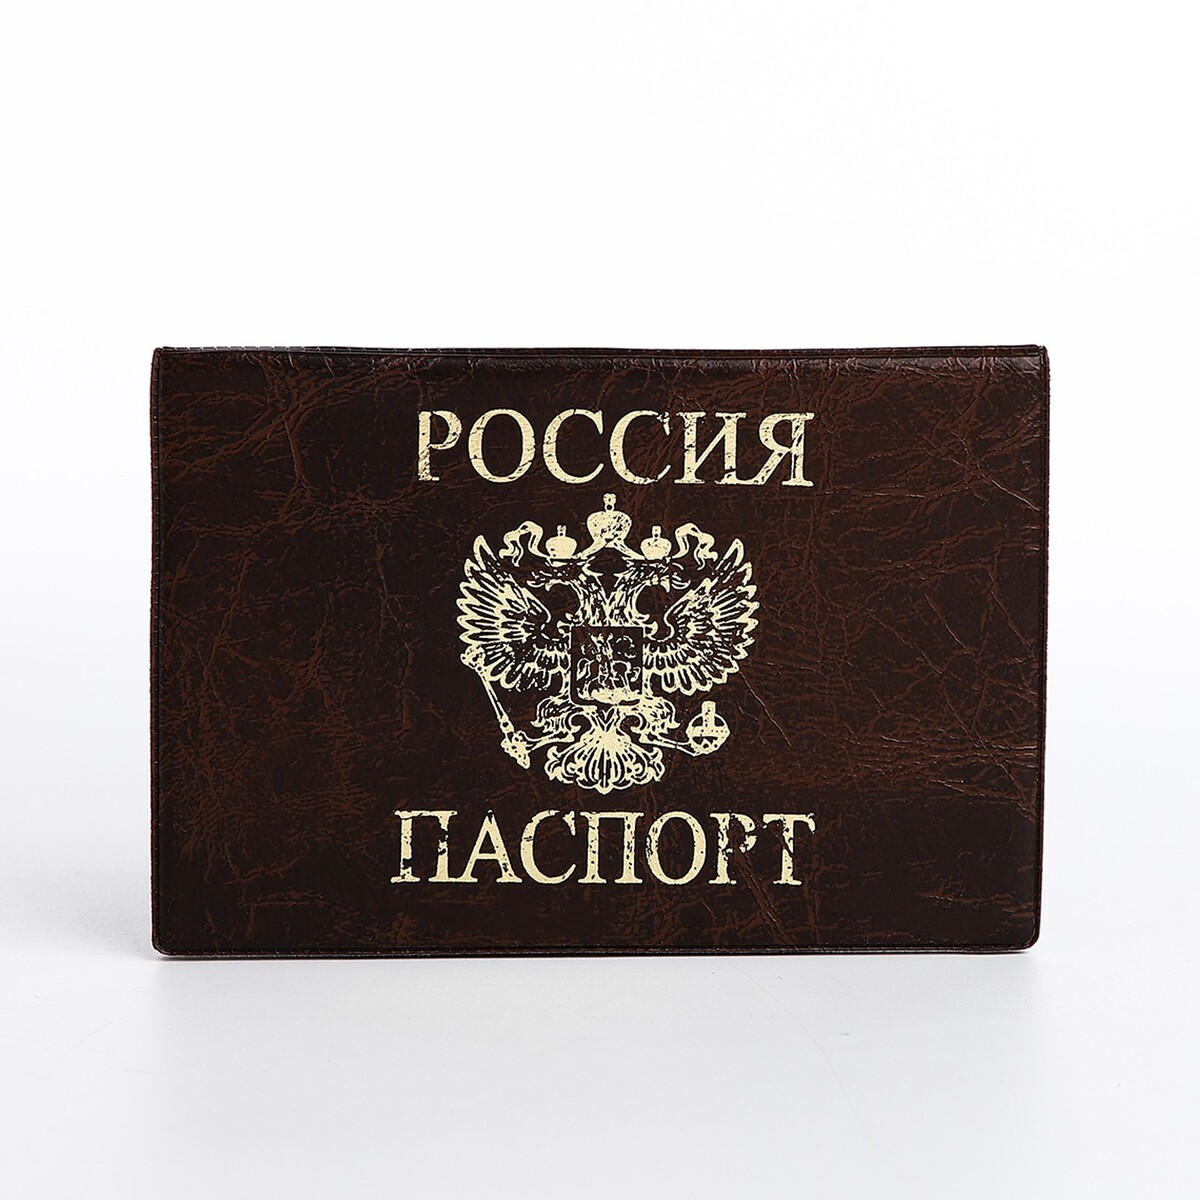 Обложка для паспорта, цвет коричневый обложка для автодокументов infolio коллекция beard светло коричневый 10 13 5см искусственная кожа